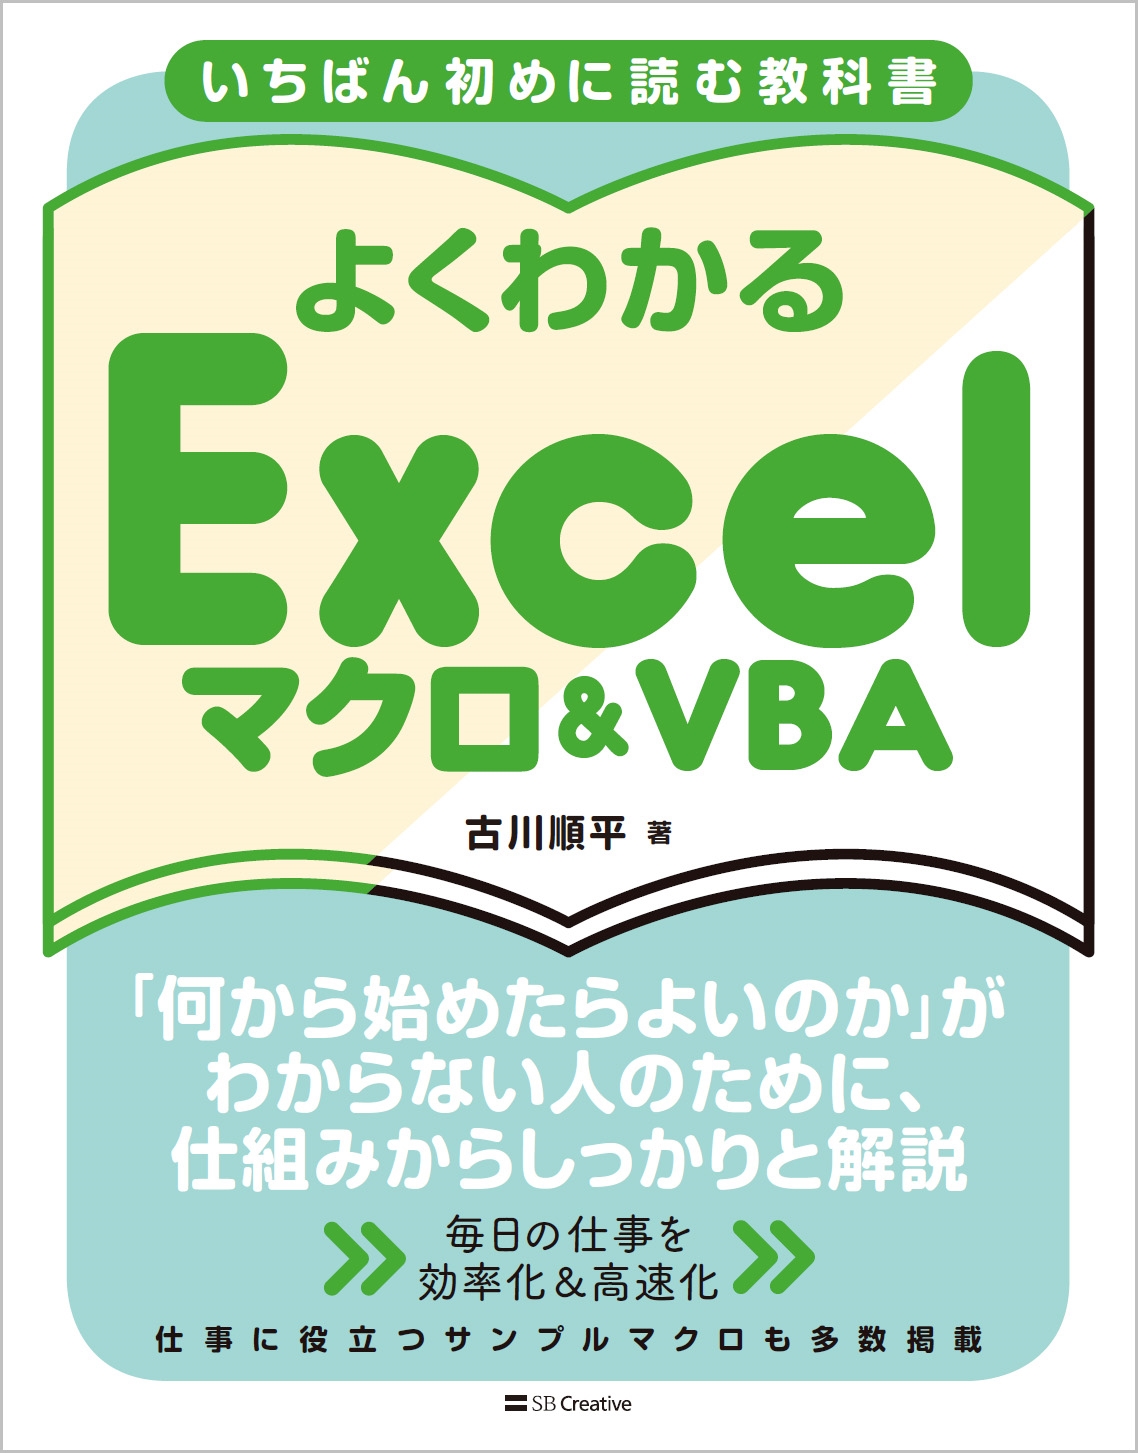 古川順平/いちばん初めに読む教科書 よくわかる Excelマクロ&VBA